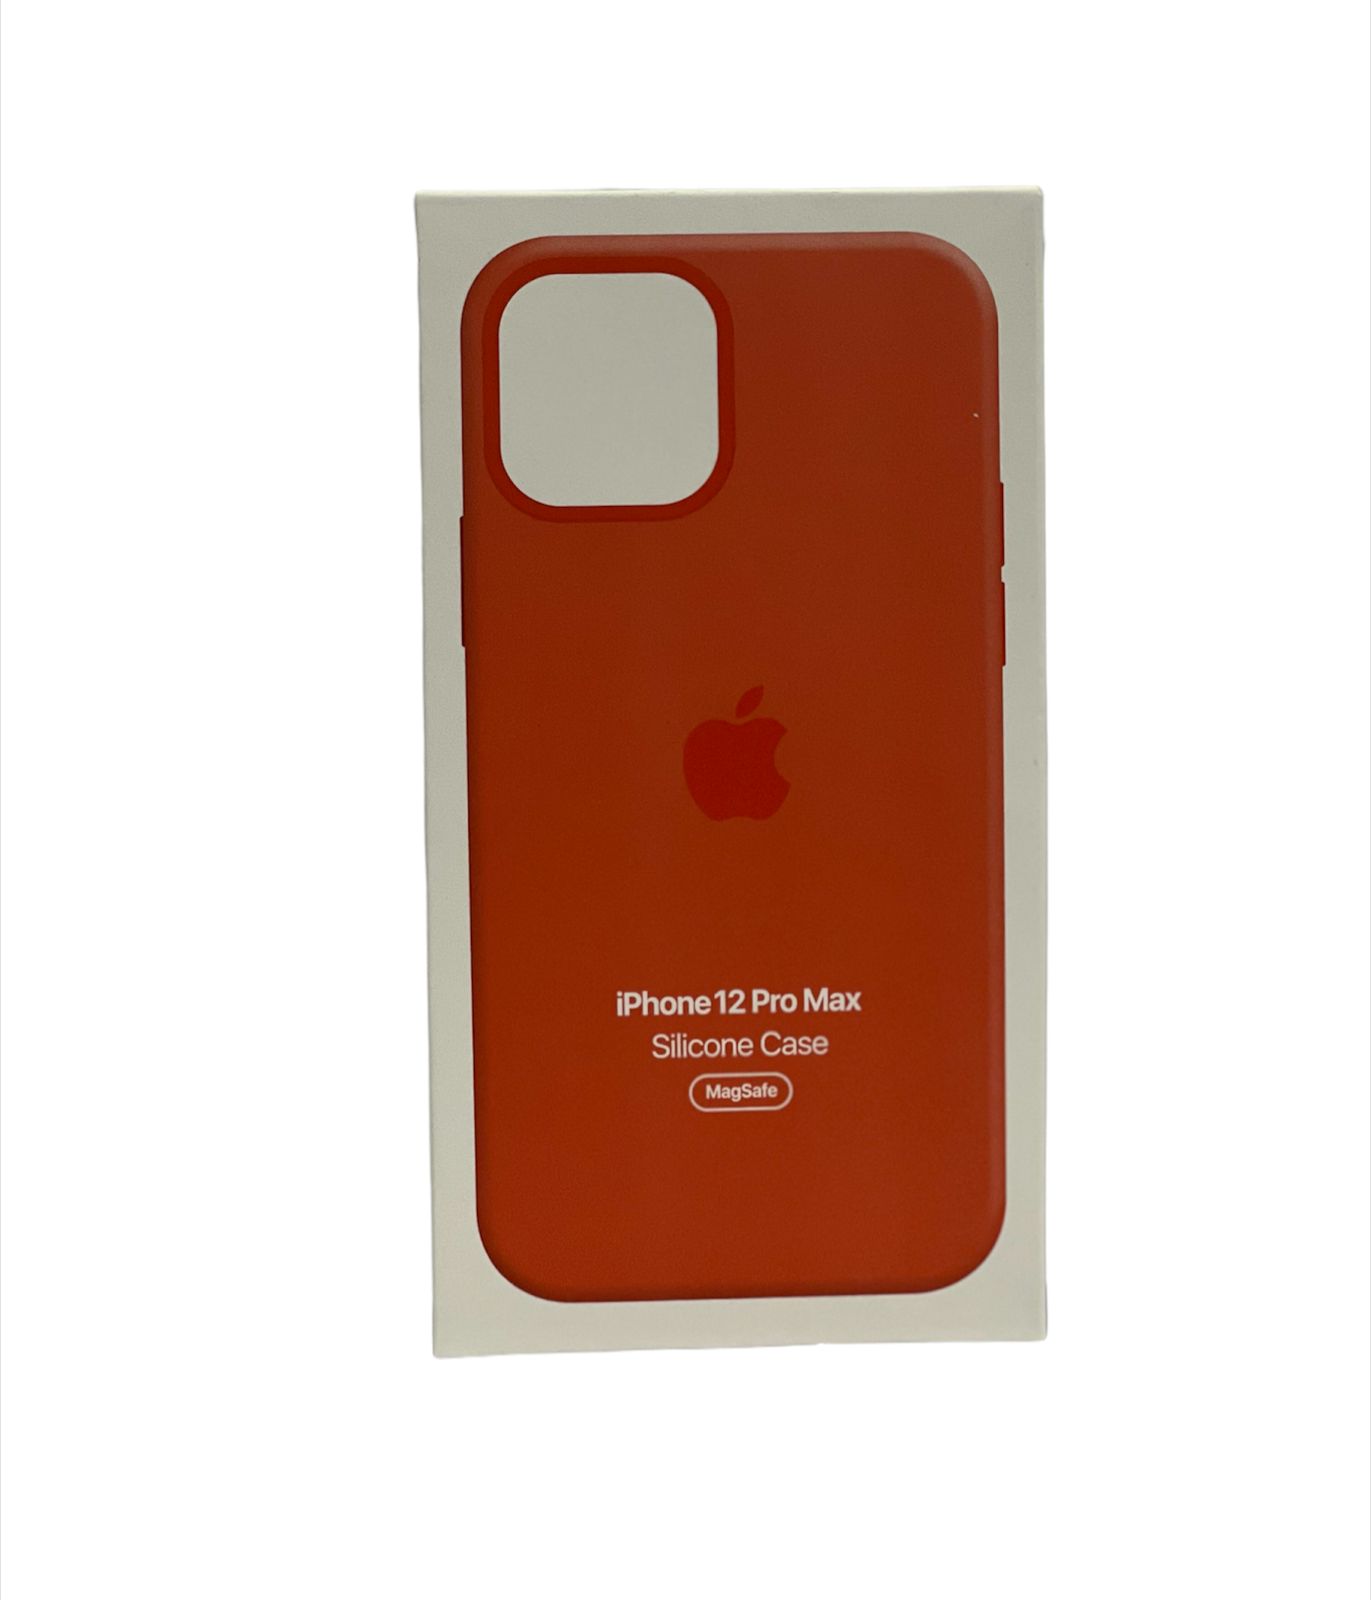 Funda de Silicón con MagSafe para iPhone 12 y 12 Pro Naranja